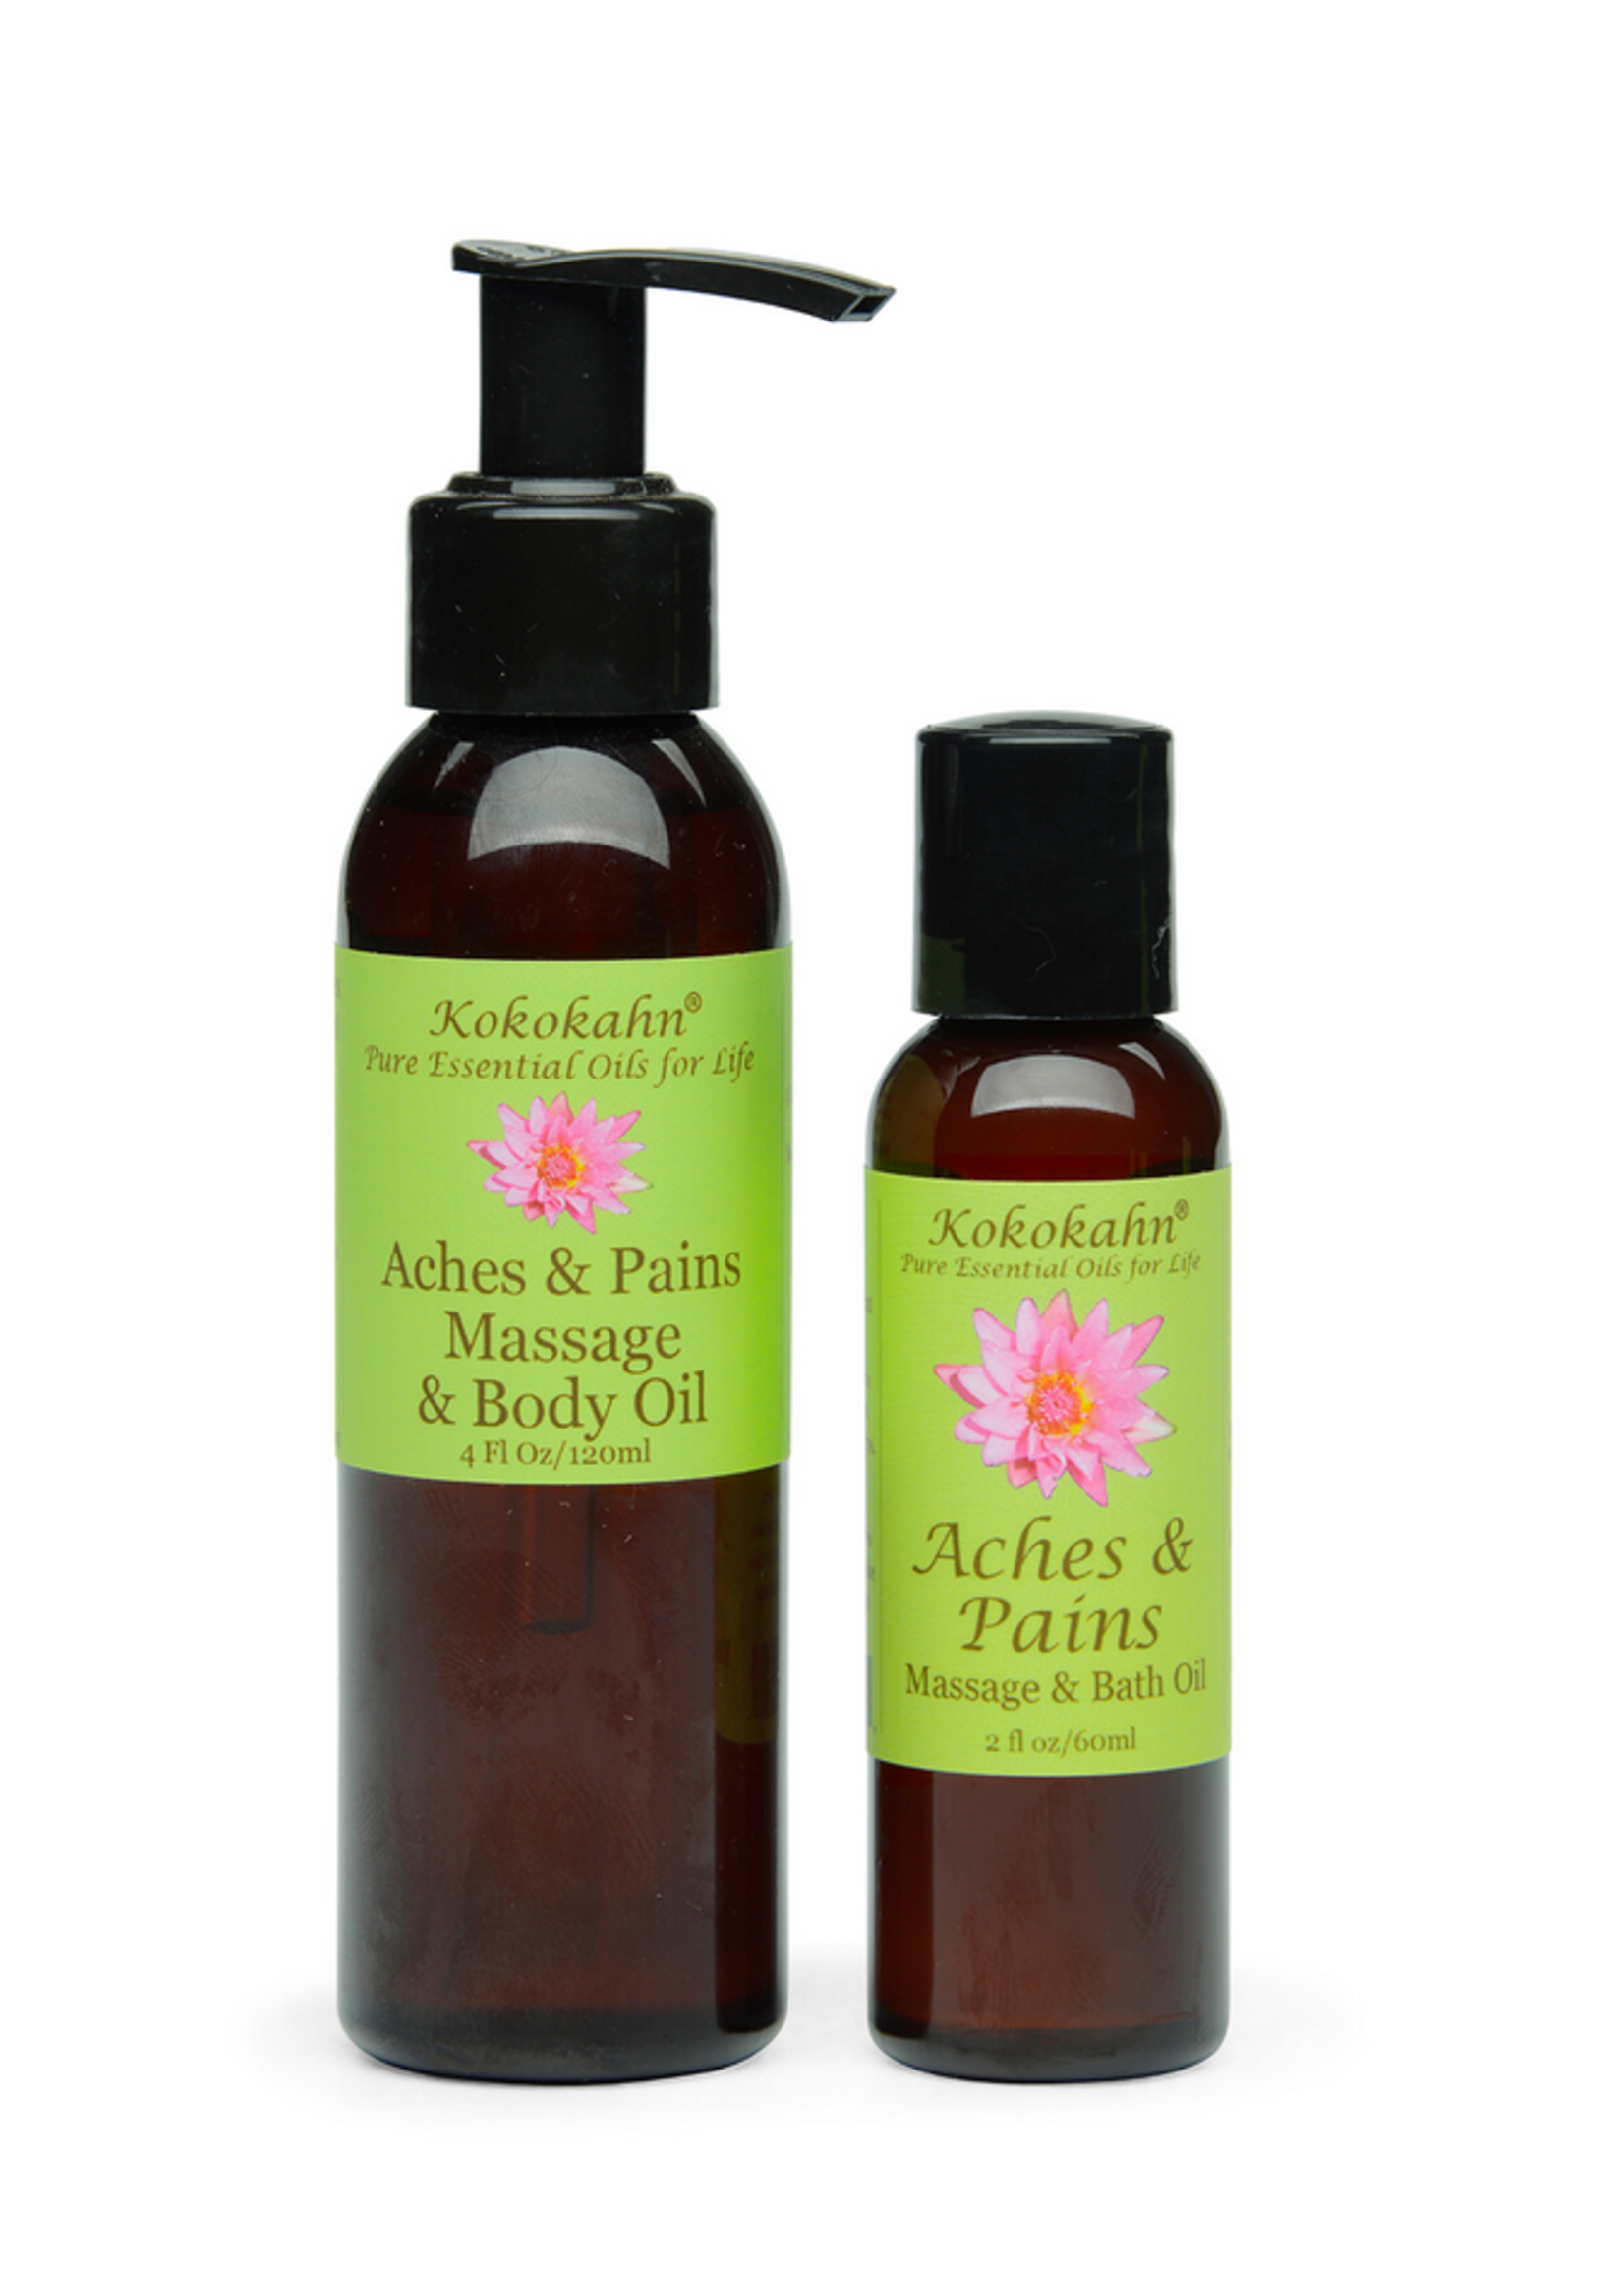 Kokokahn Aches & Pains Massage Oil